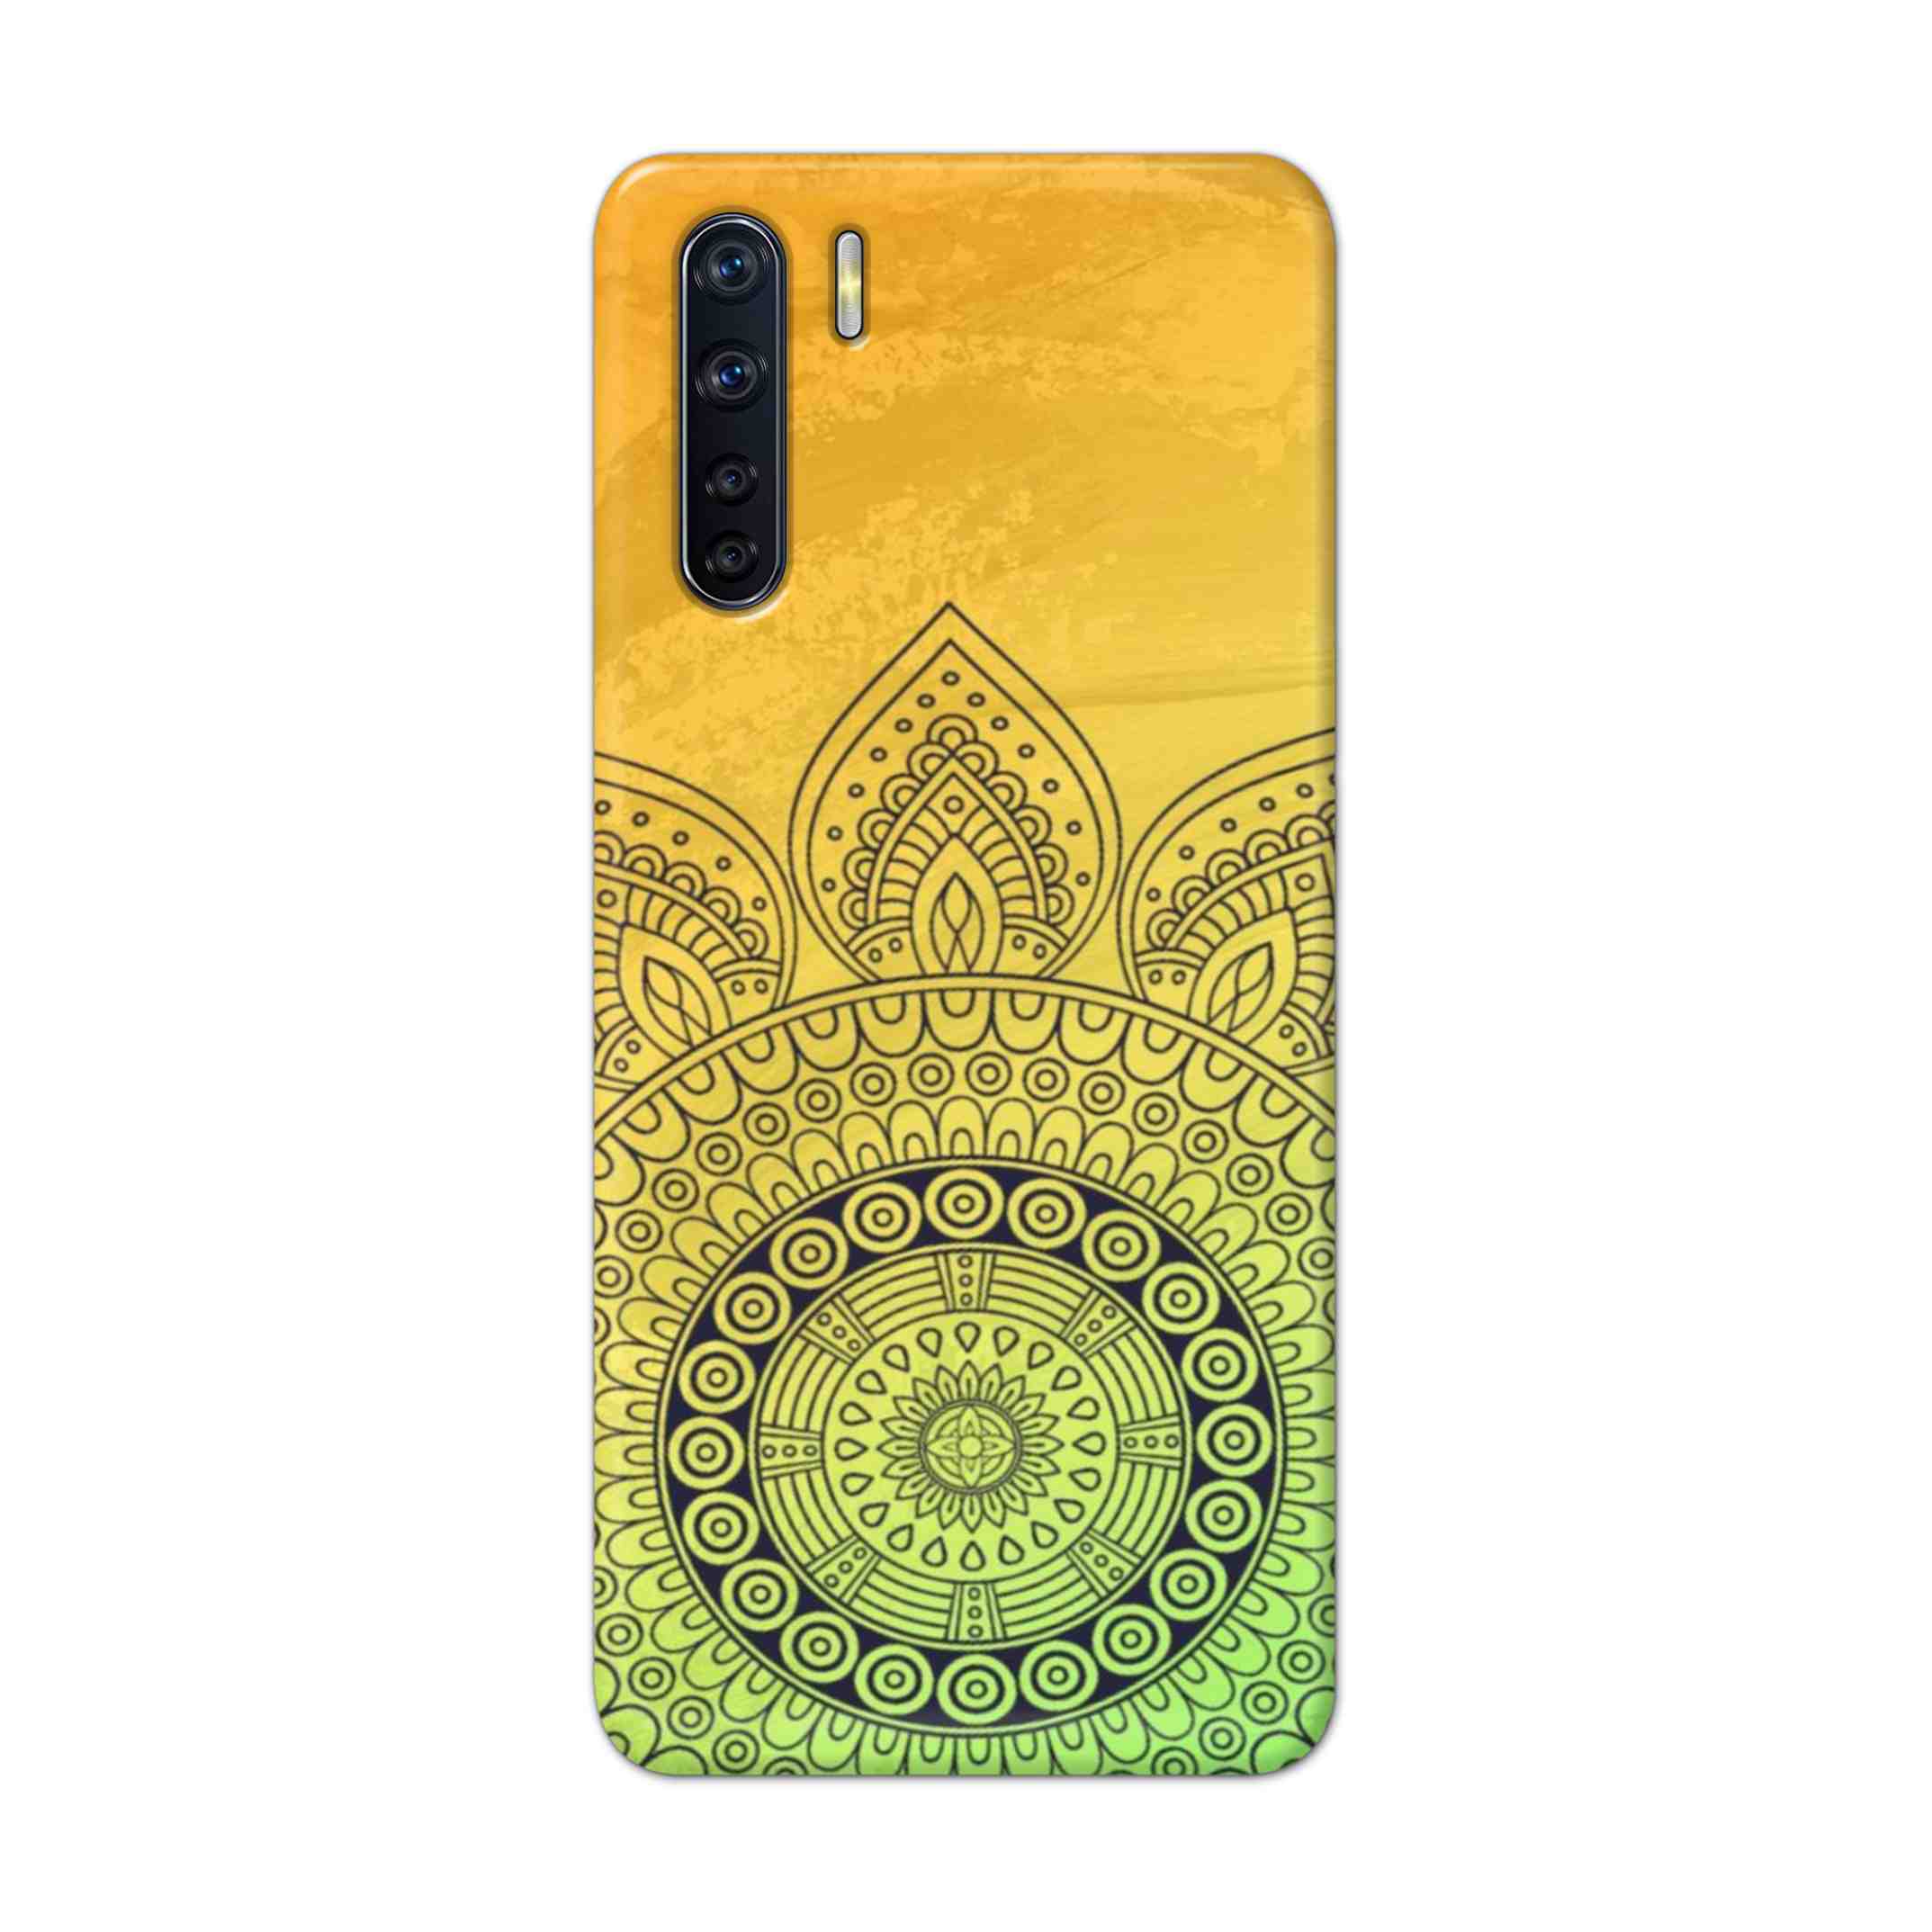 Buy Yellow Rangoli Hard Back Mobile Phone Case Cover For OPPO F15 Online